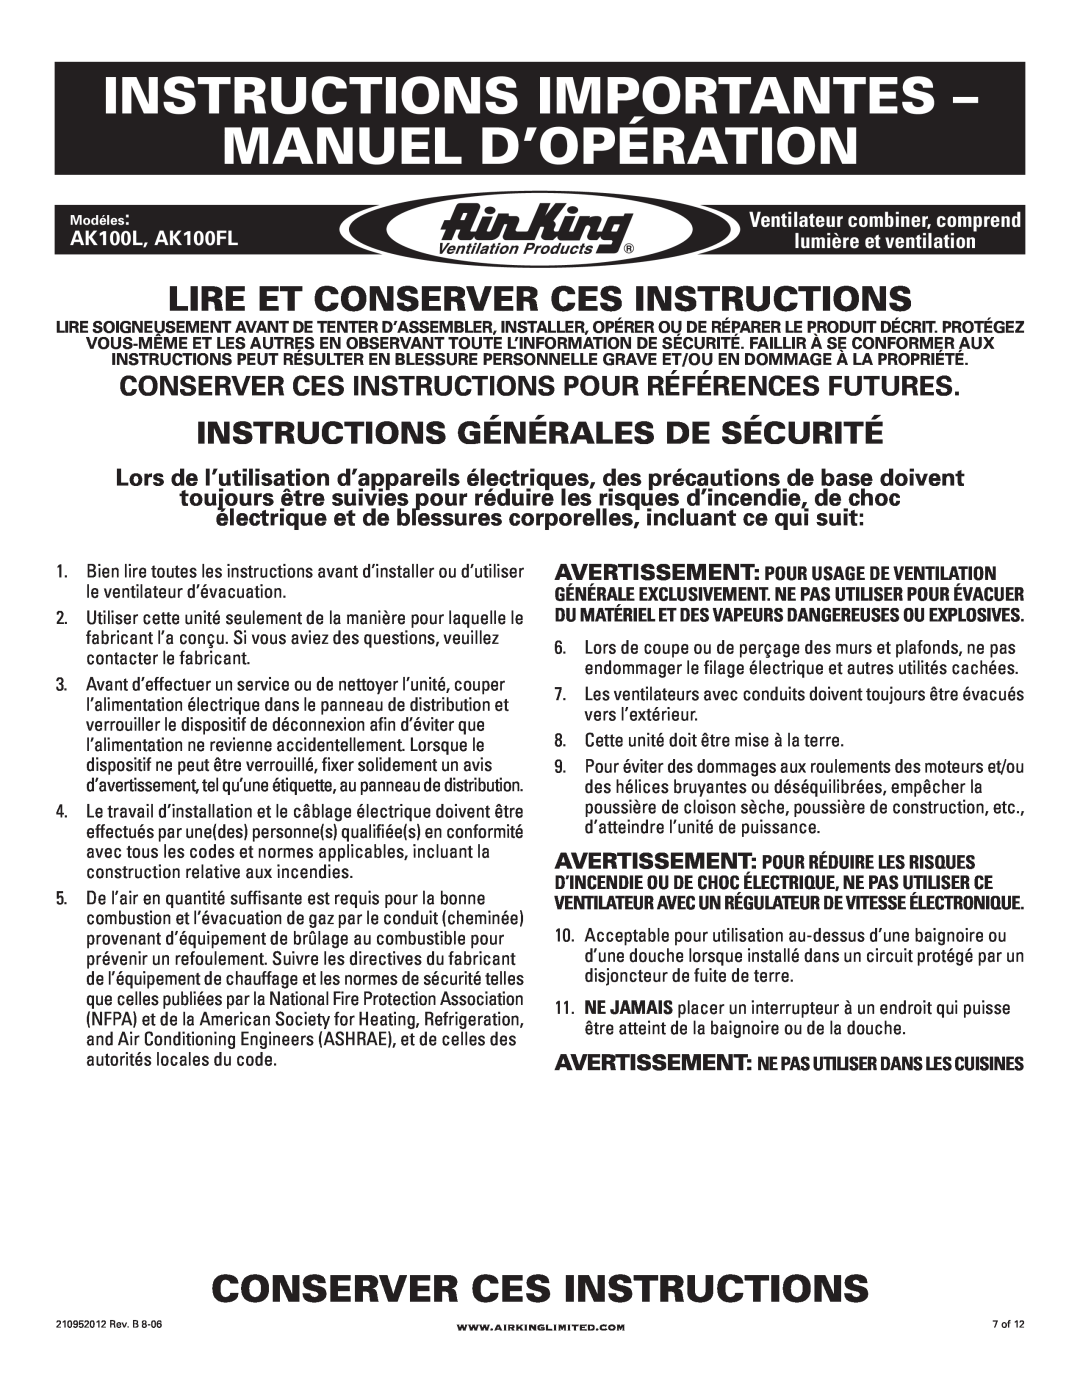 Air King AK100FL, AK100L manual Instructions Importantes - Manuel D’Opération, Conserver Ces Instructions 